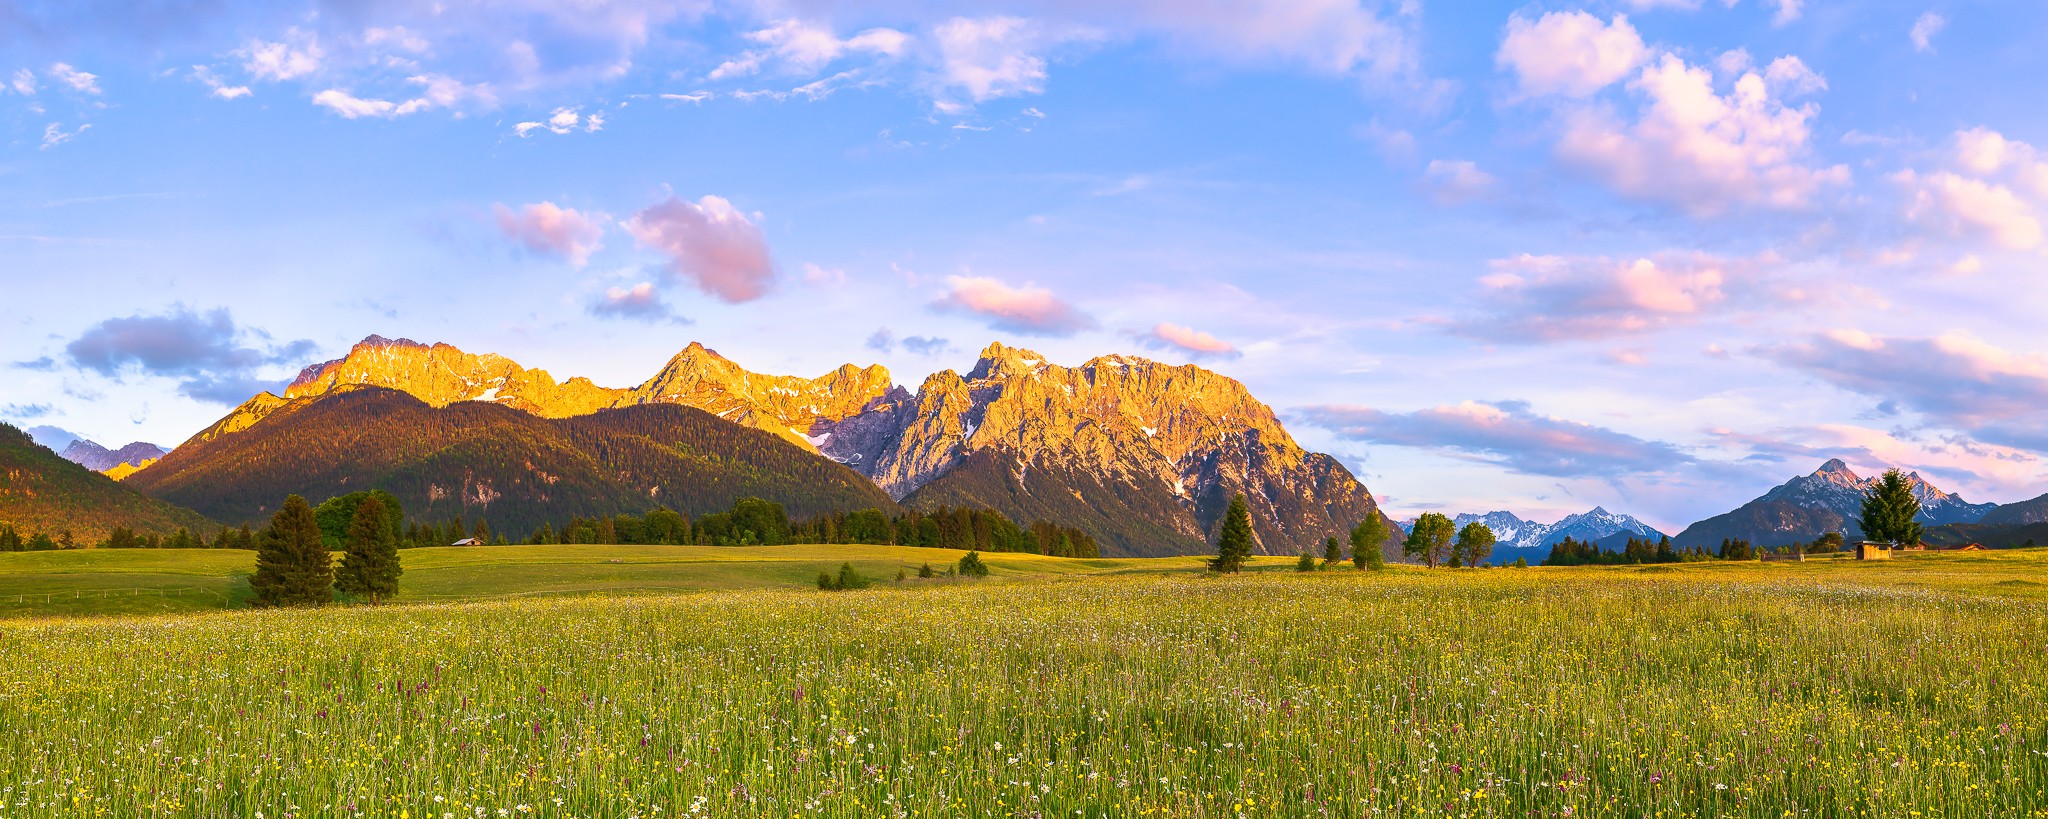 Alpenglühen auf den Buckelwiesen. Blumenwiese auf den Buckelwiesen zwischen Krün und Mittenwald. Abendstimmung mit Alpenglühen an einer Blumenwiese ...